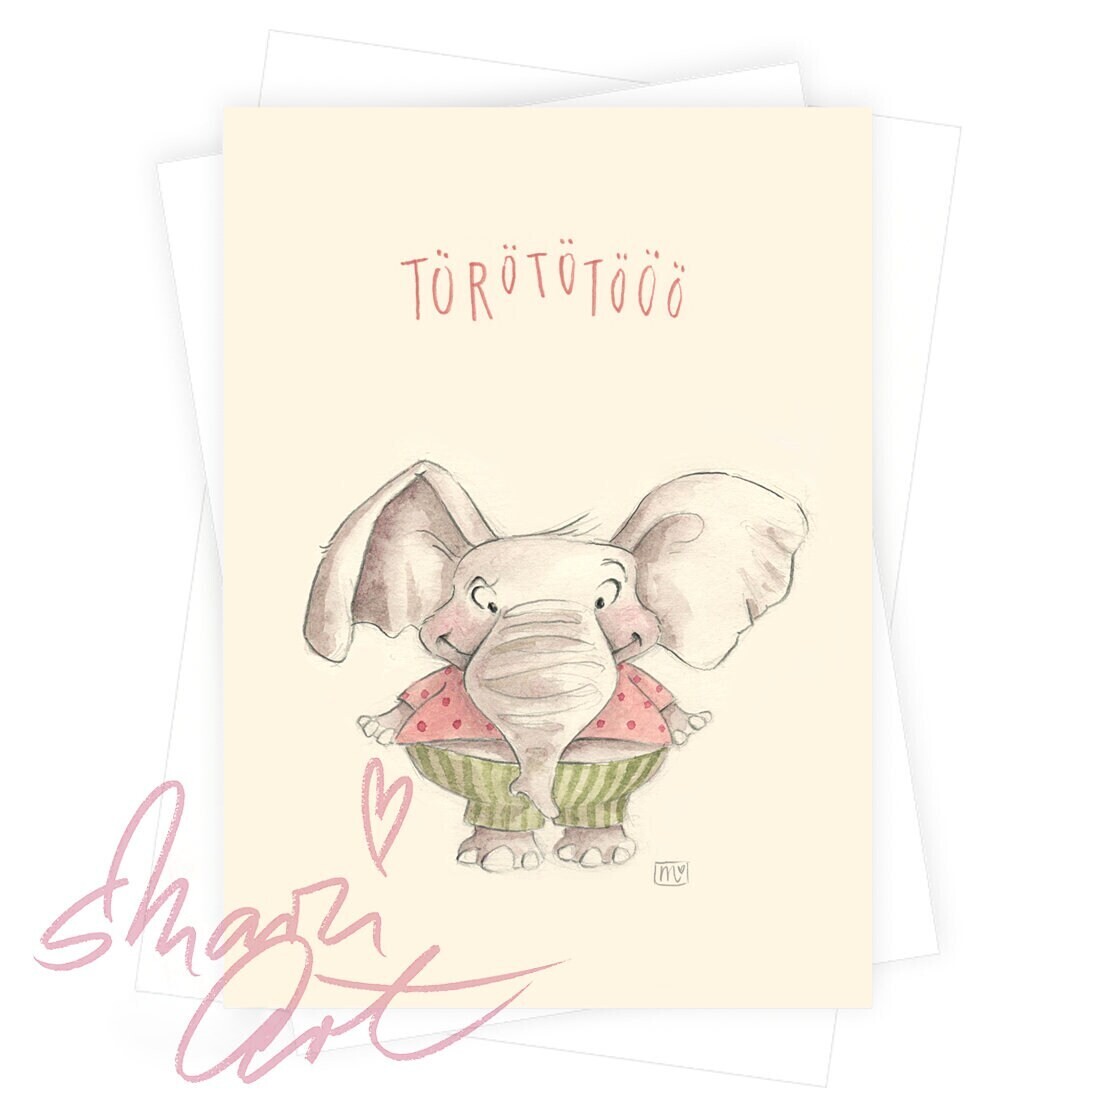 Postkarte Elefant Törotötö - farbiger Kunstdruck